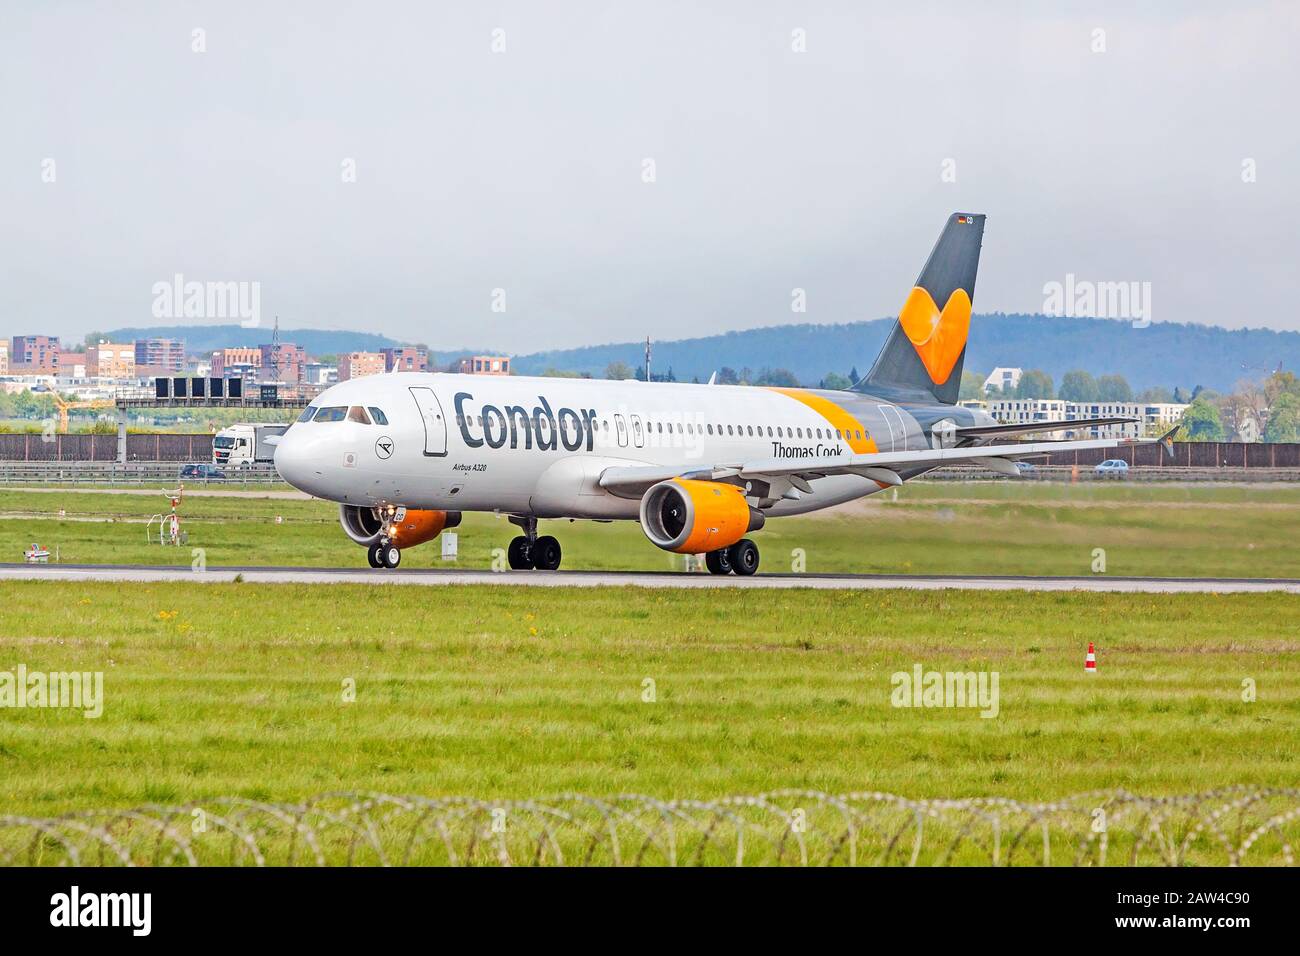 Stoccarda, Germania - 29 aprile 2017: Aeromobile Airbus A320 da Condor a terra (aeroporto di Stoccarda) prima del decollo - prato verde con recinzione di fronte Foto Stock